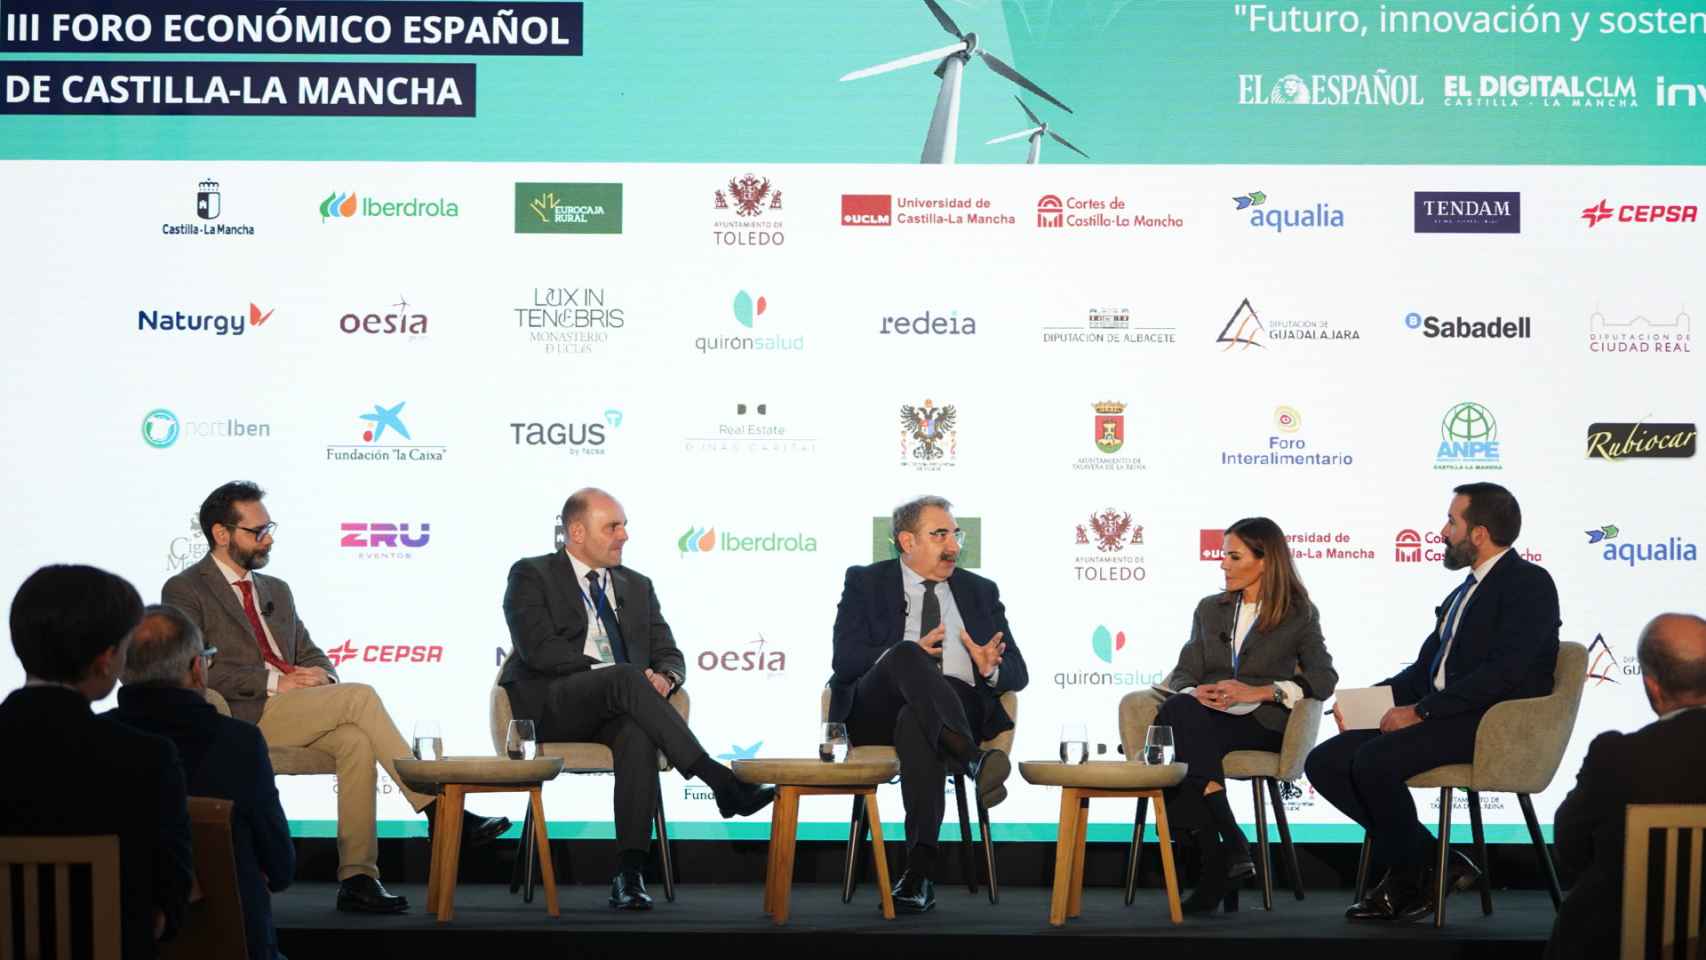 Imagen de la mesa redonda 'Atención e innovación en la sanidad de Castilla-La Mancha', en la segunda jornada del III Foro Económico Español Castilla-La Mancha ‘Futuro, innovación y sostenibilidad’.